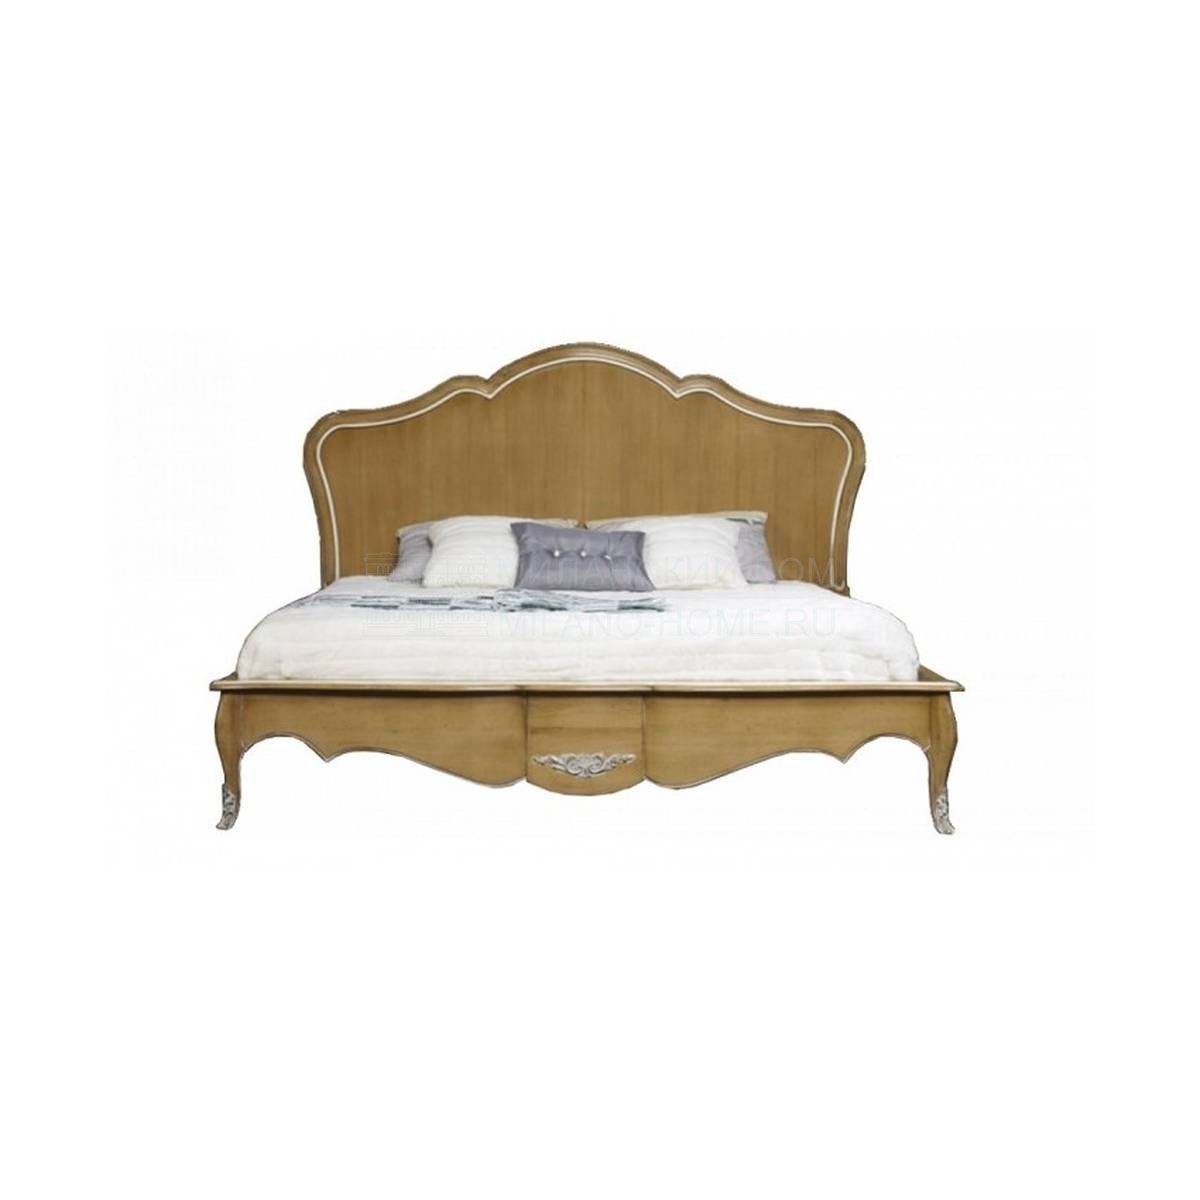 Кровать с деревянным изголовьем Duplessis/25172 из Франции фабрики LABARERE